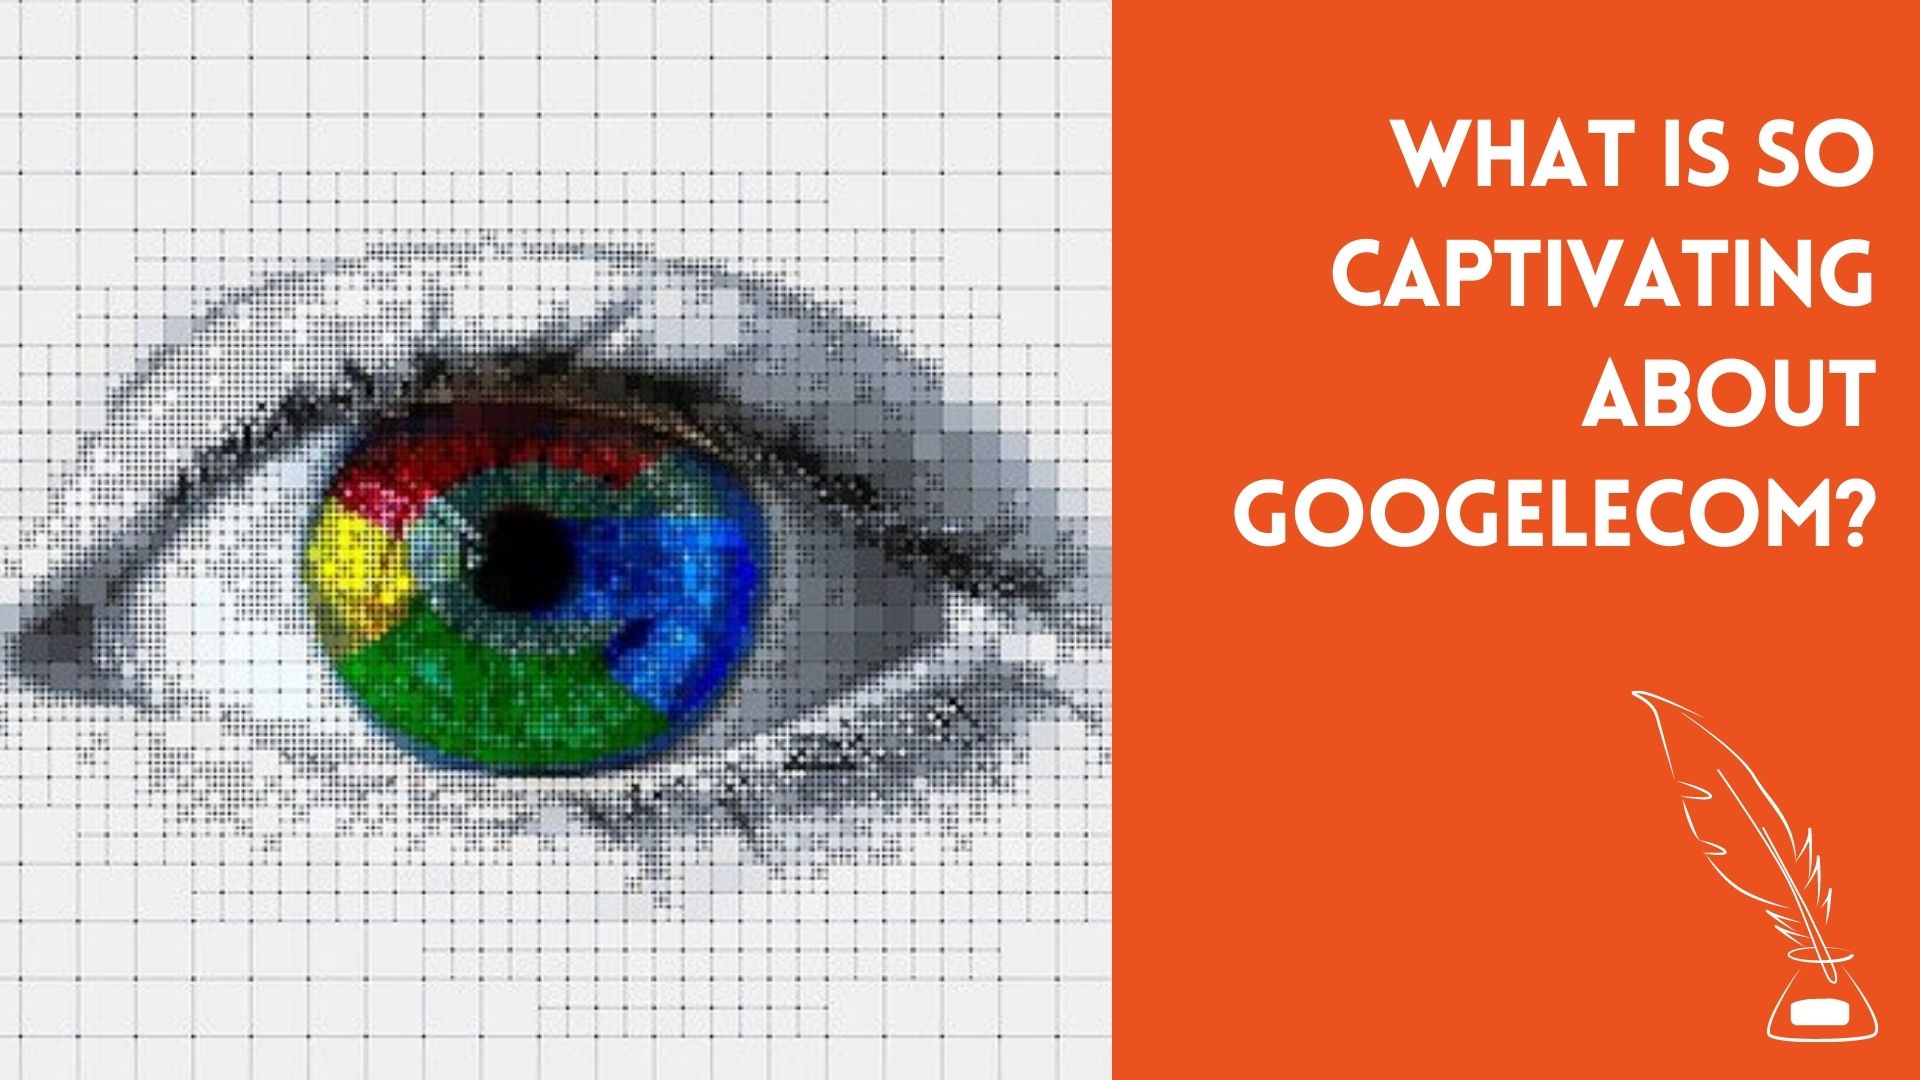 Googelecom: What is so captivating about Googelecom & googmecom?